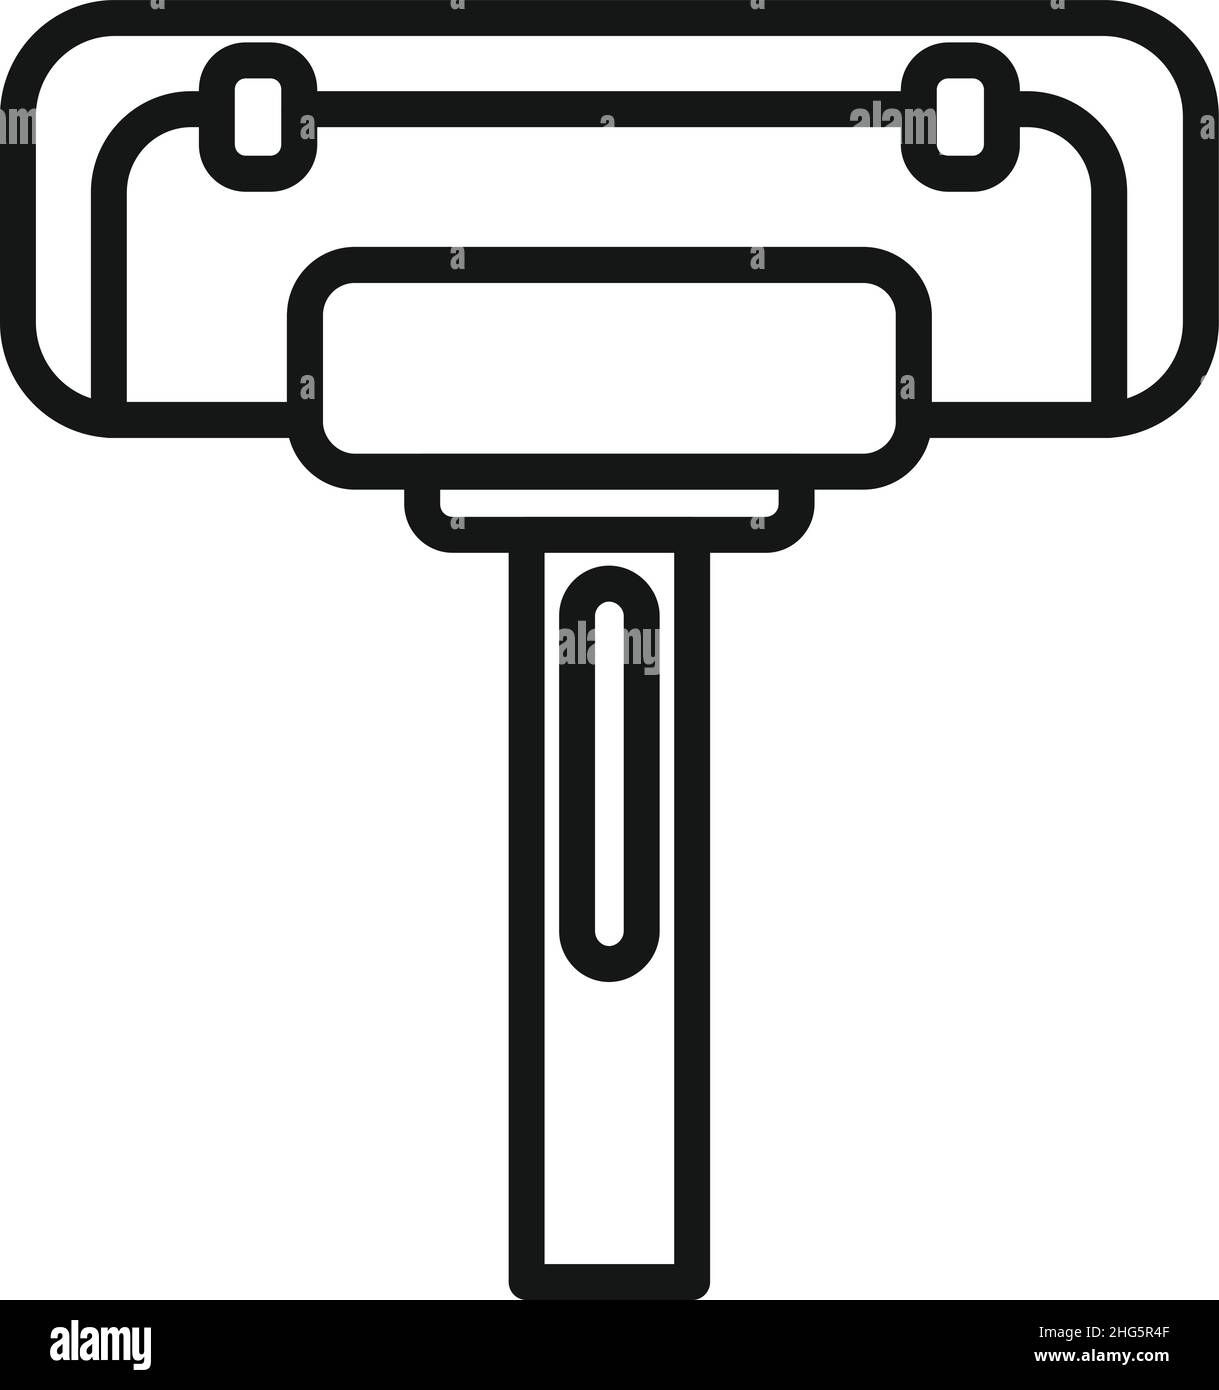 Umrissvektor für Wischmopp-Symbol reinigen. Reinigungspool. Reparaturservice Stock Vektor